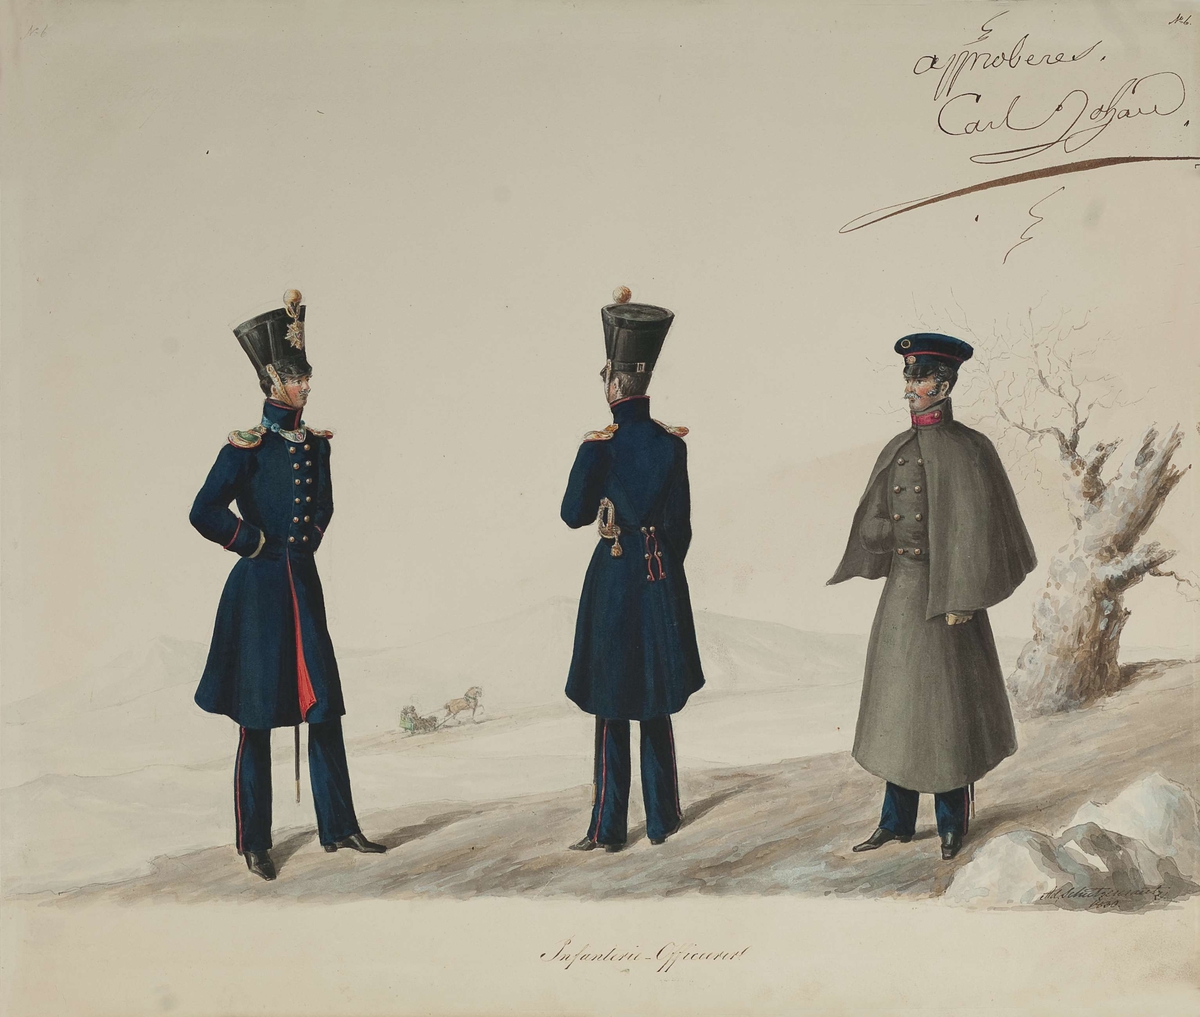 Approbasjonstegning for uniformer til infanterioffiserer, 1830. Tekst: Infanterie-Officerer. Approberet Carl Johan.